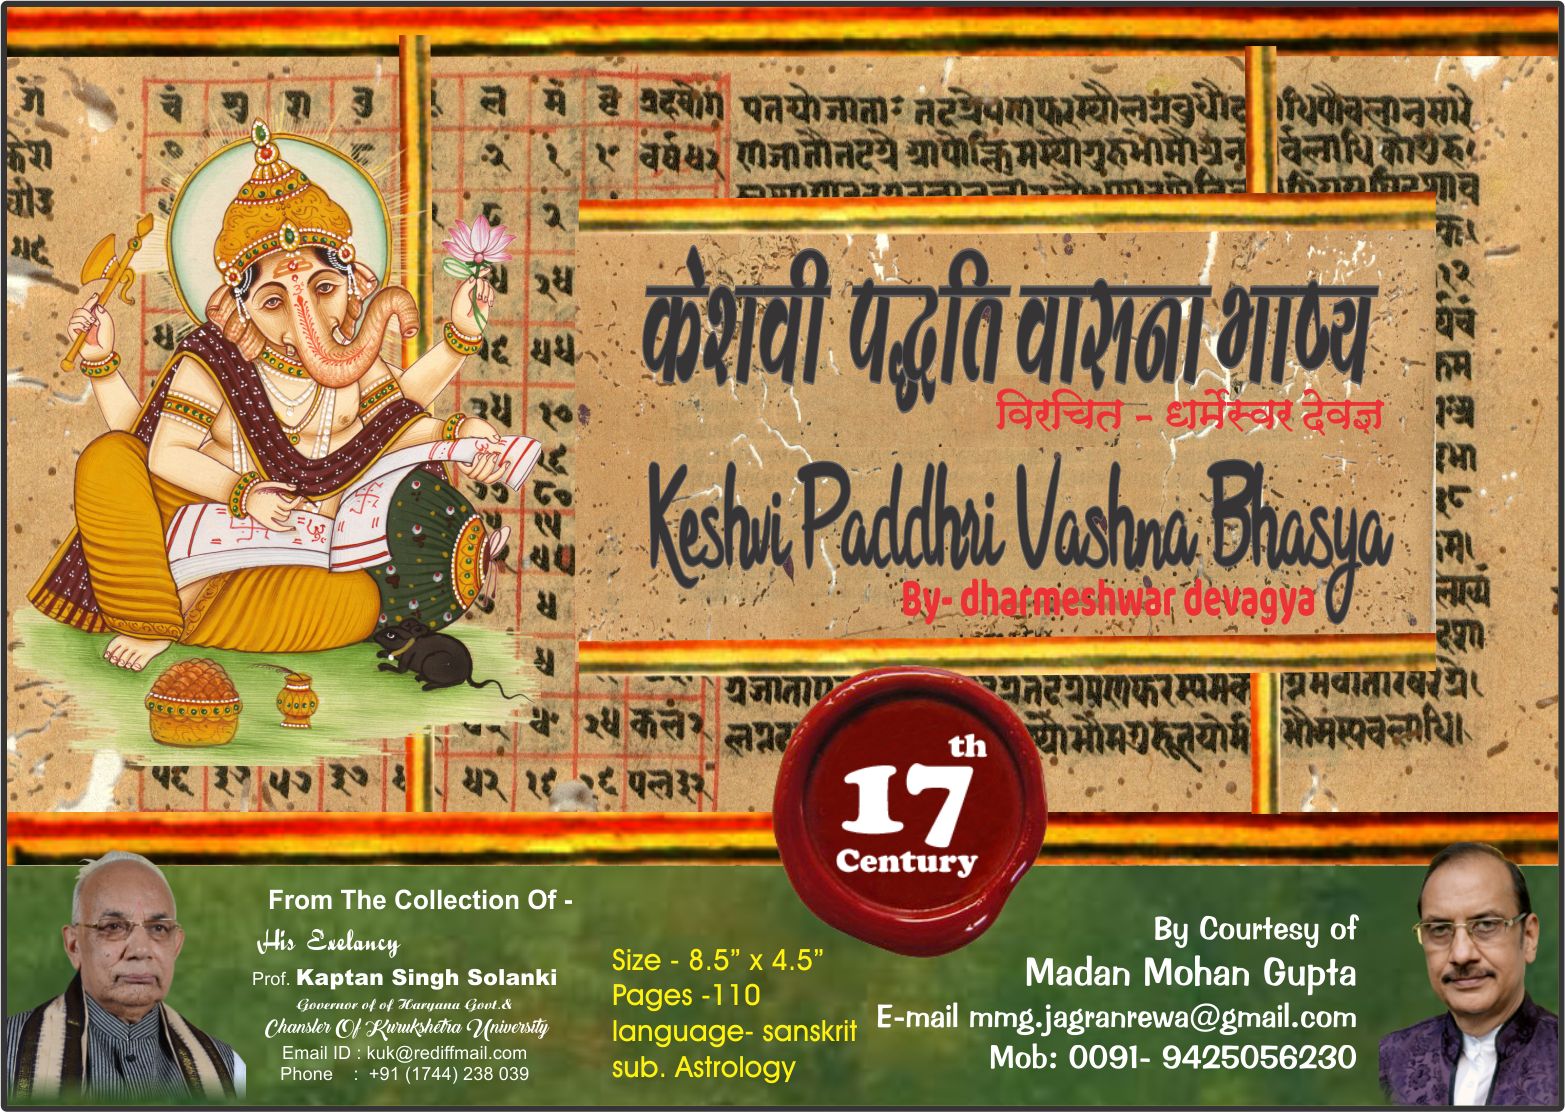 Keshvi Paddhri Vashna Bhasya